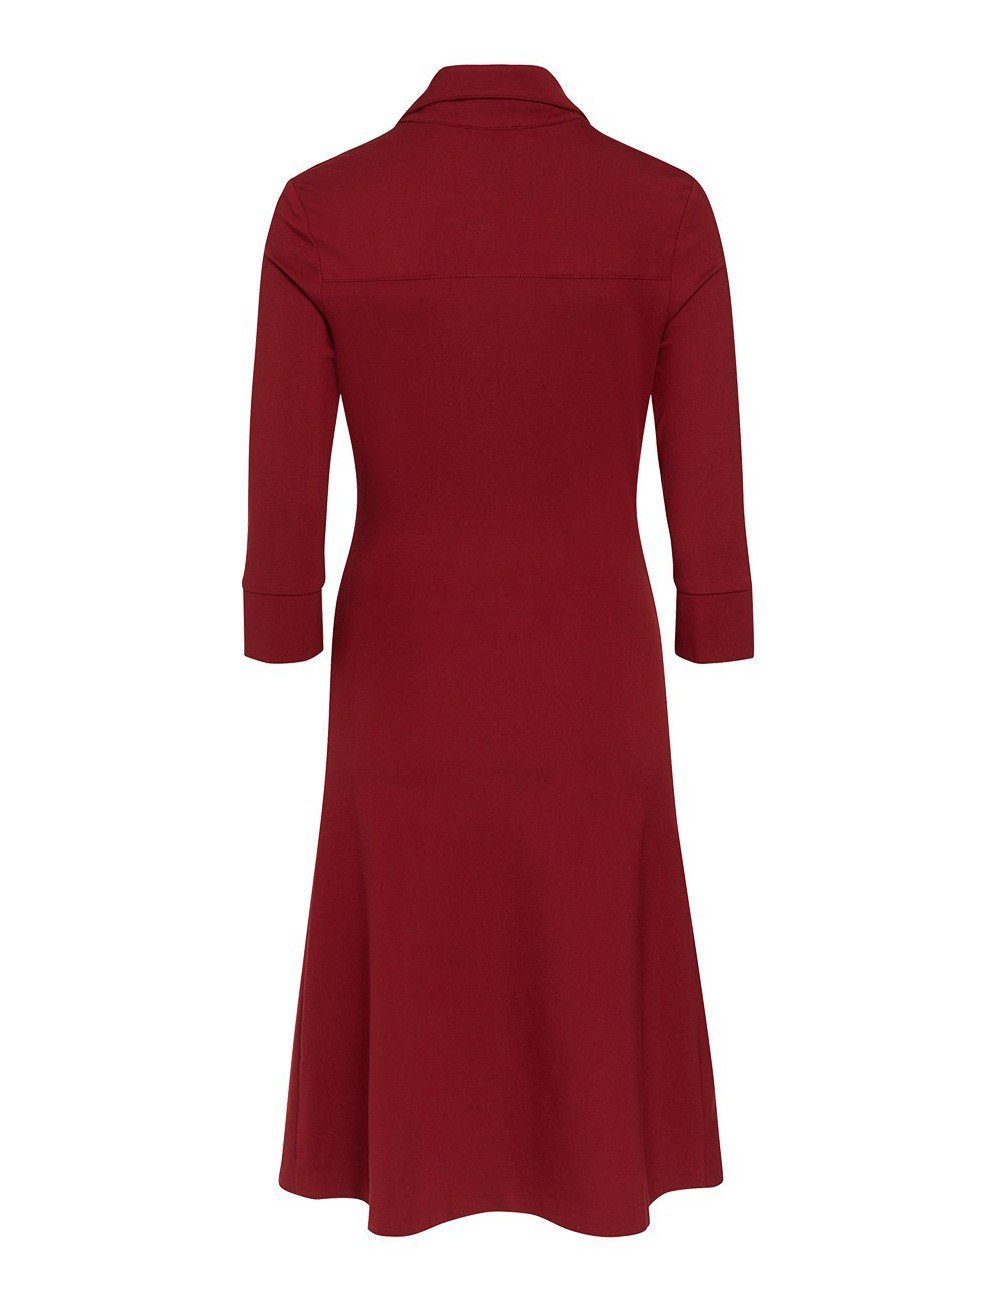 Brigitte von Boch burgund Stretch-Kleid Hemdblusenkleid Millet